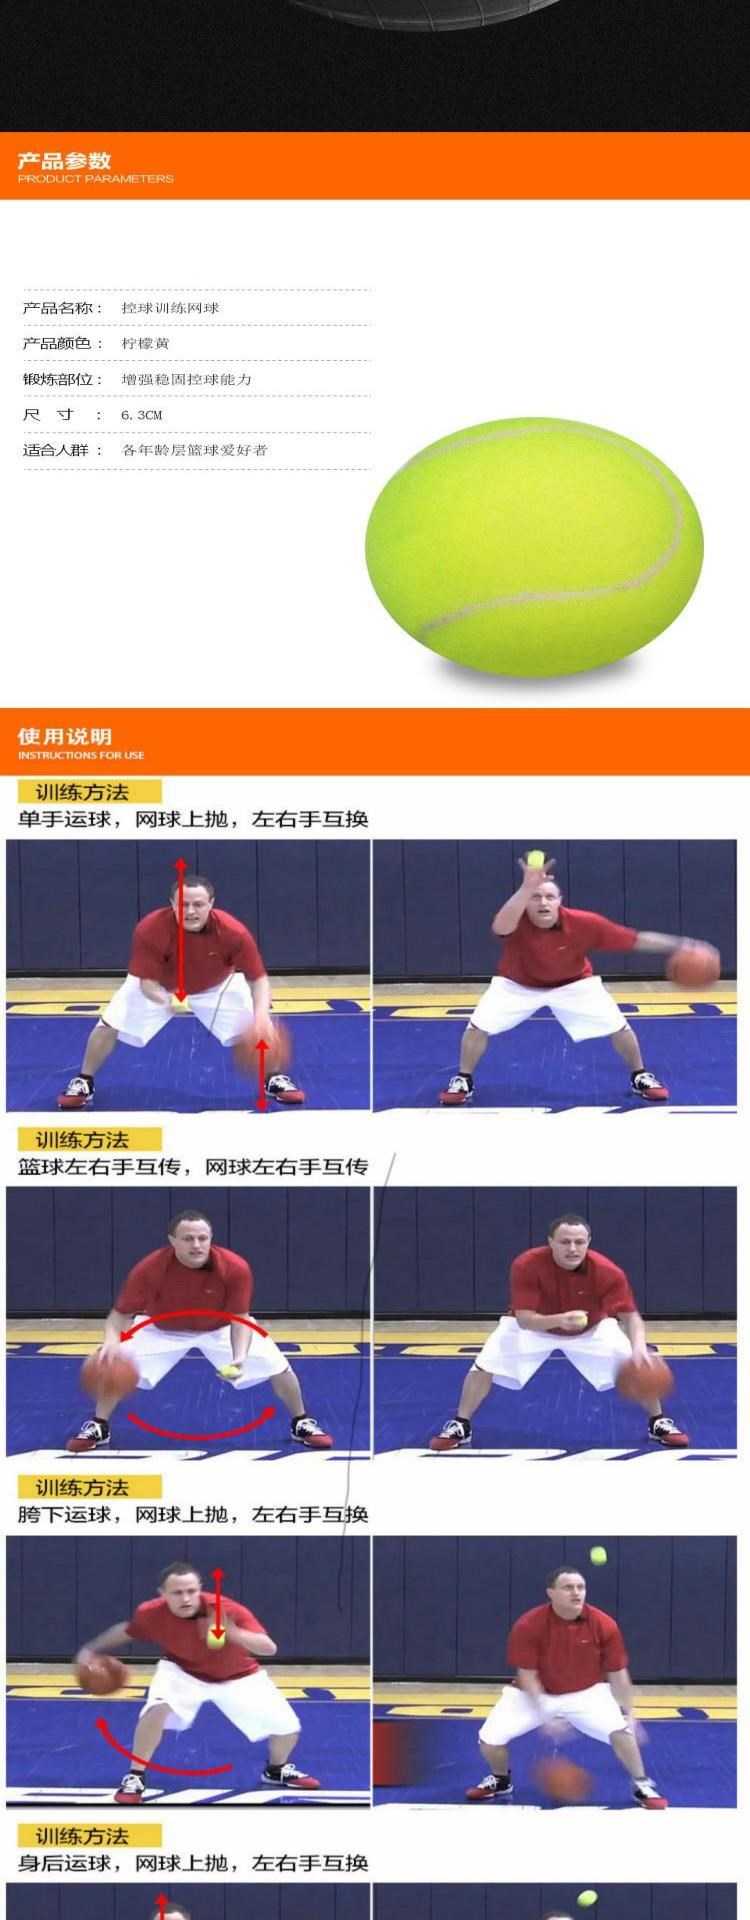 Thiết bị bóng rổ mới tung đồ dùng luyện tập tennis để nâng cao cảm giác bóng, kiểm soát bóng, khả năng phối hợp và phản lực tuyệt vời, thiết bị không có áp lực - Quần vợt